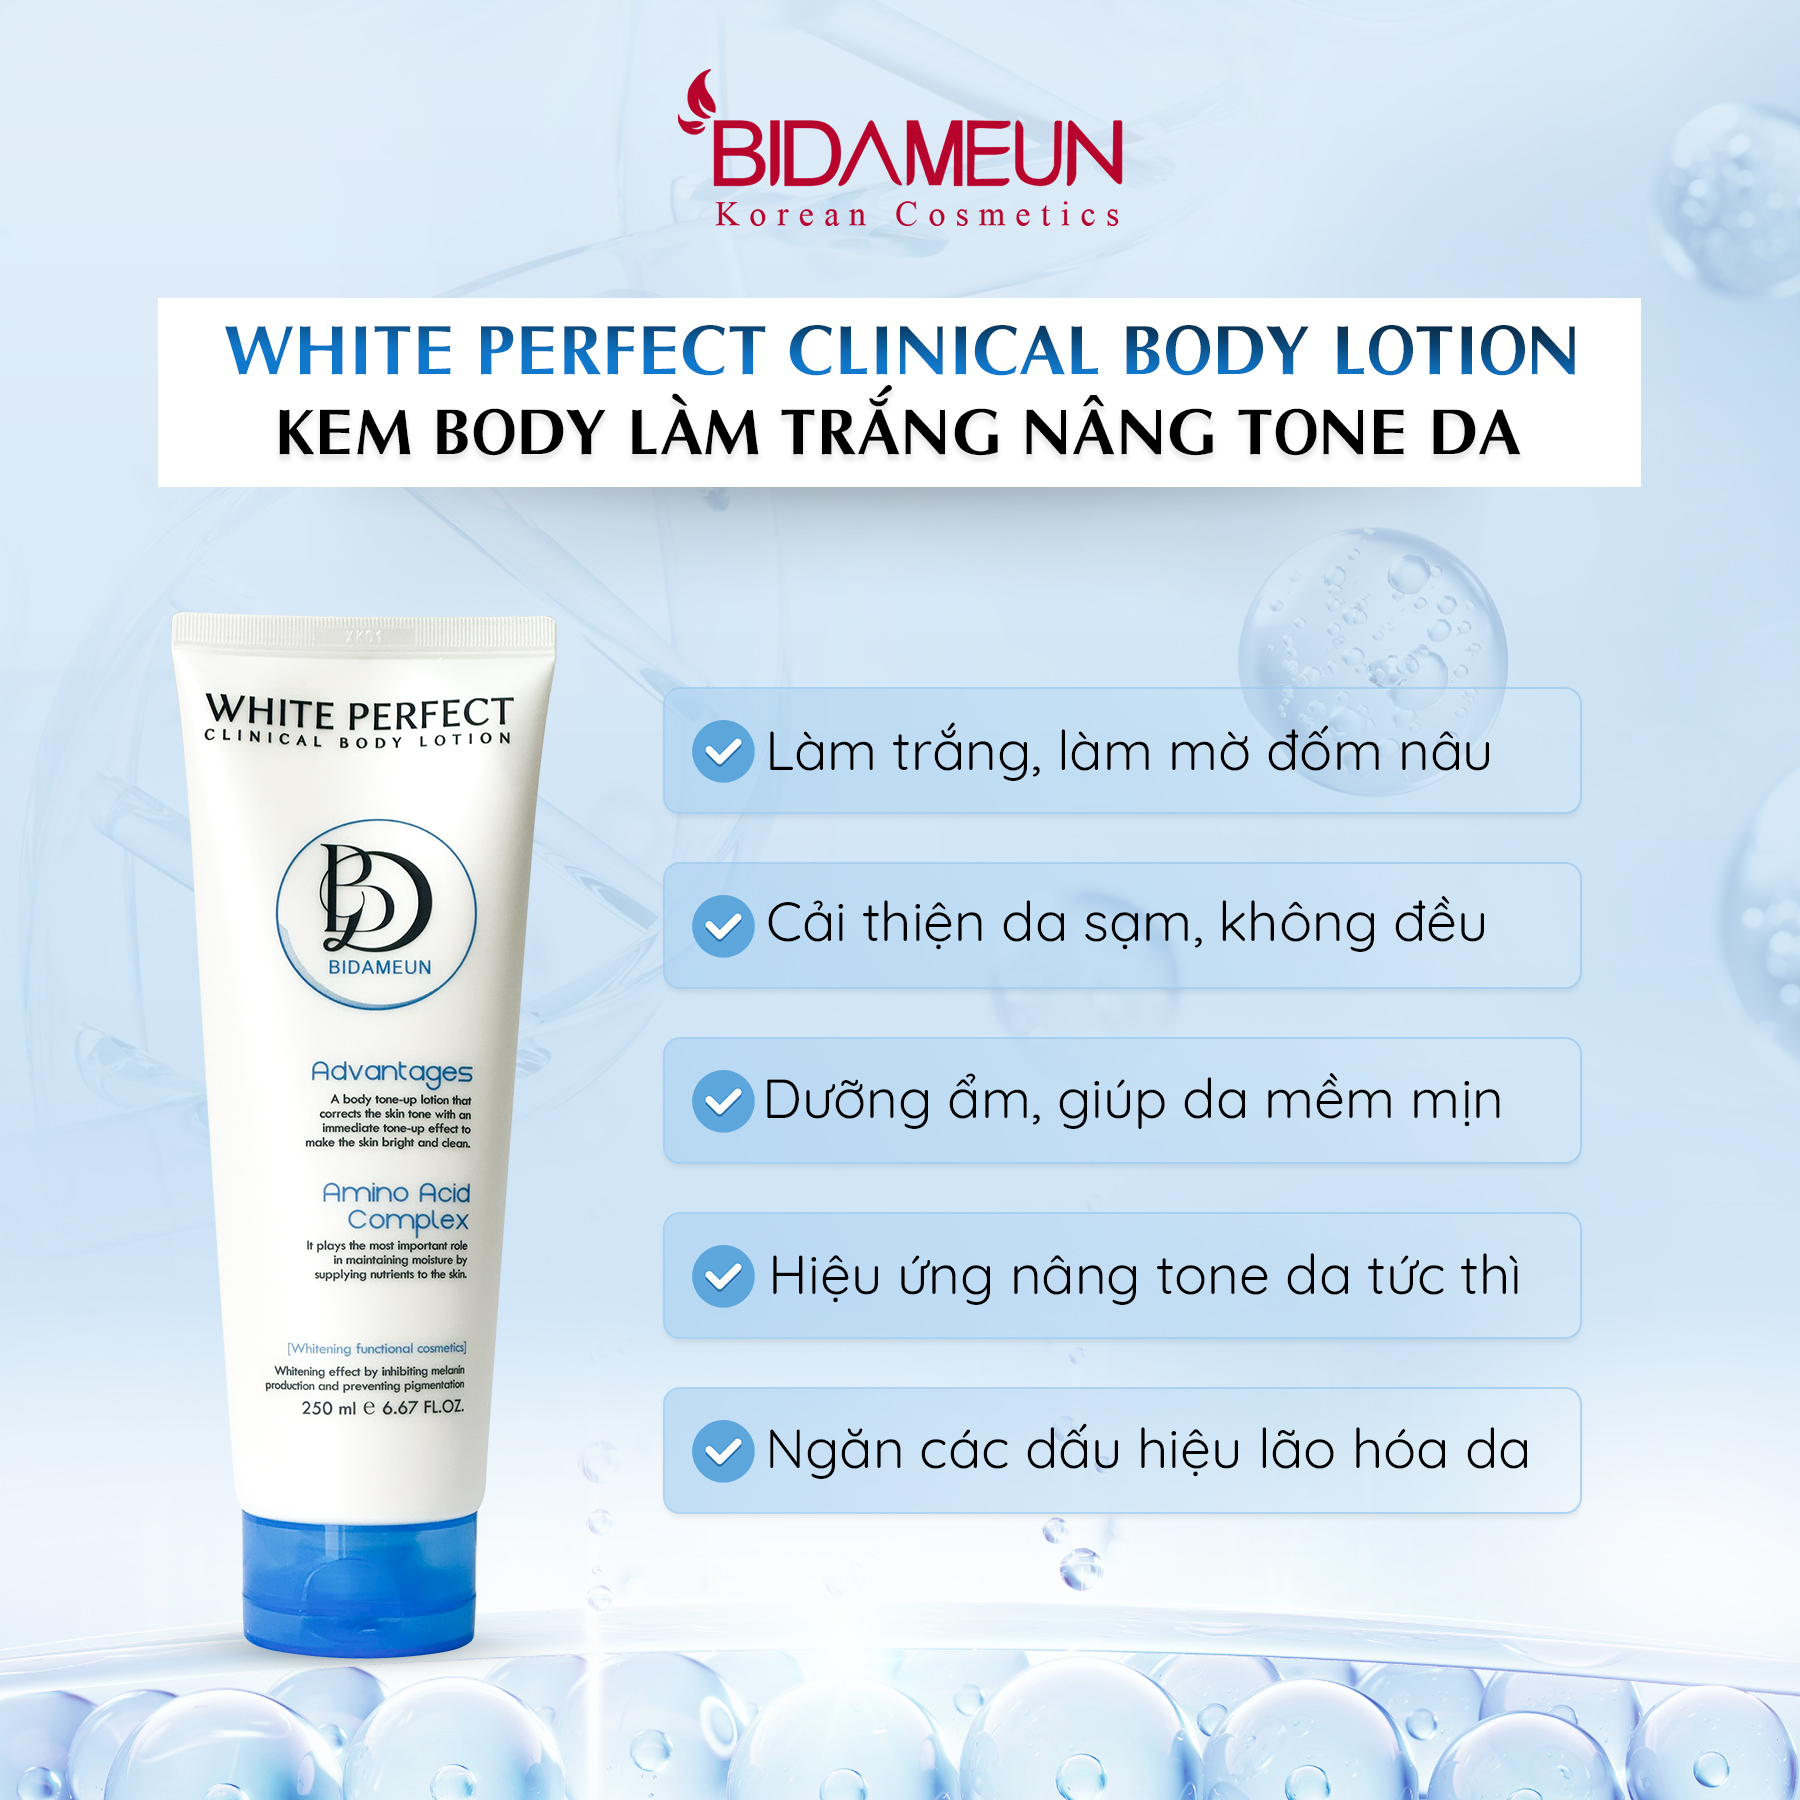 White Perfect Clinical Body Lotion - Kem body làm trắng nâng tone